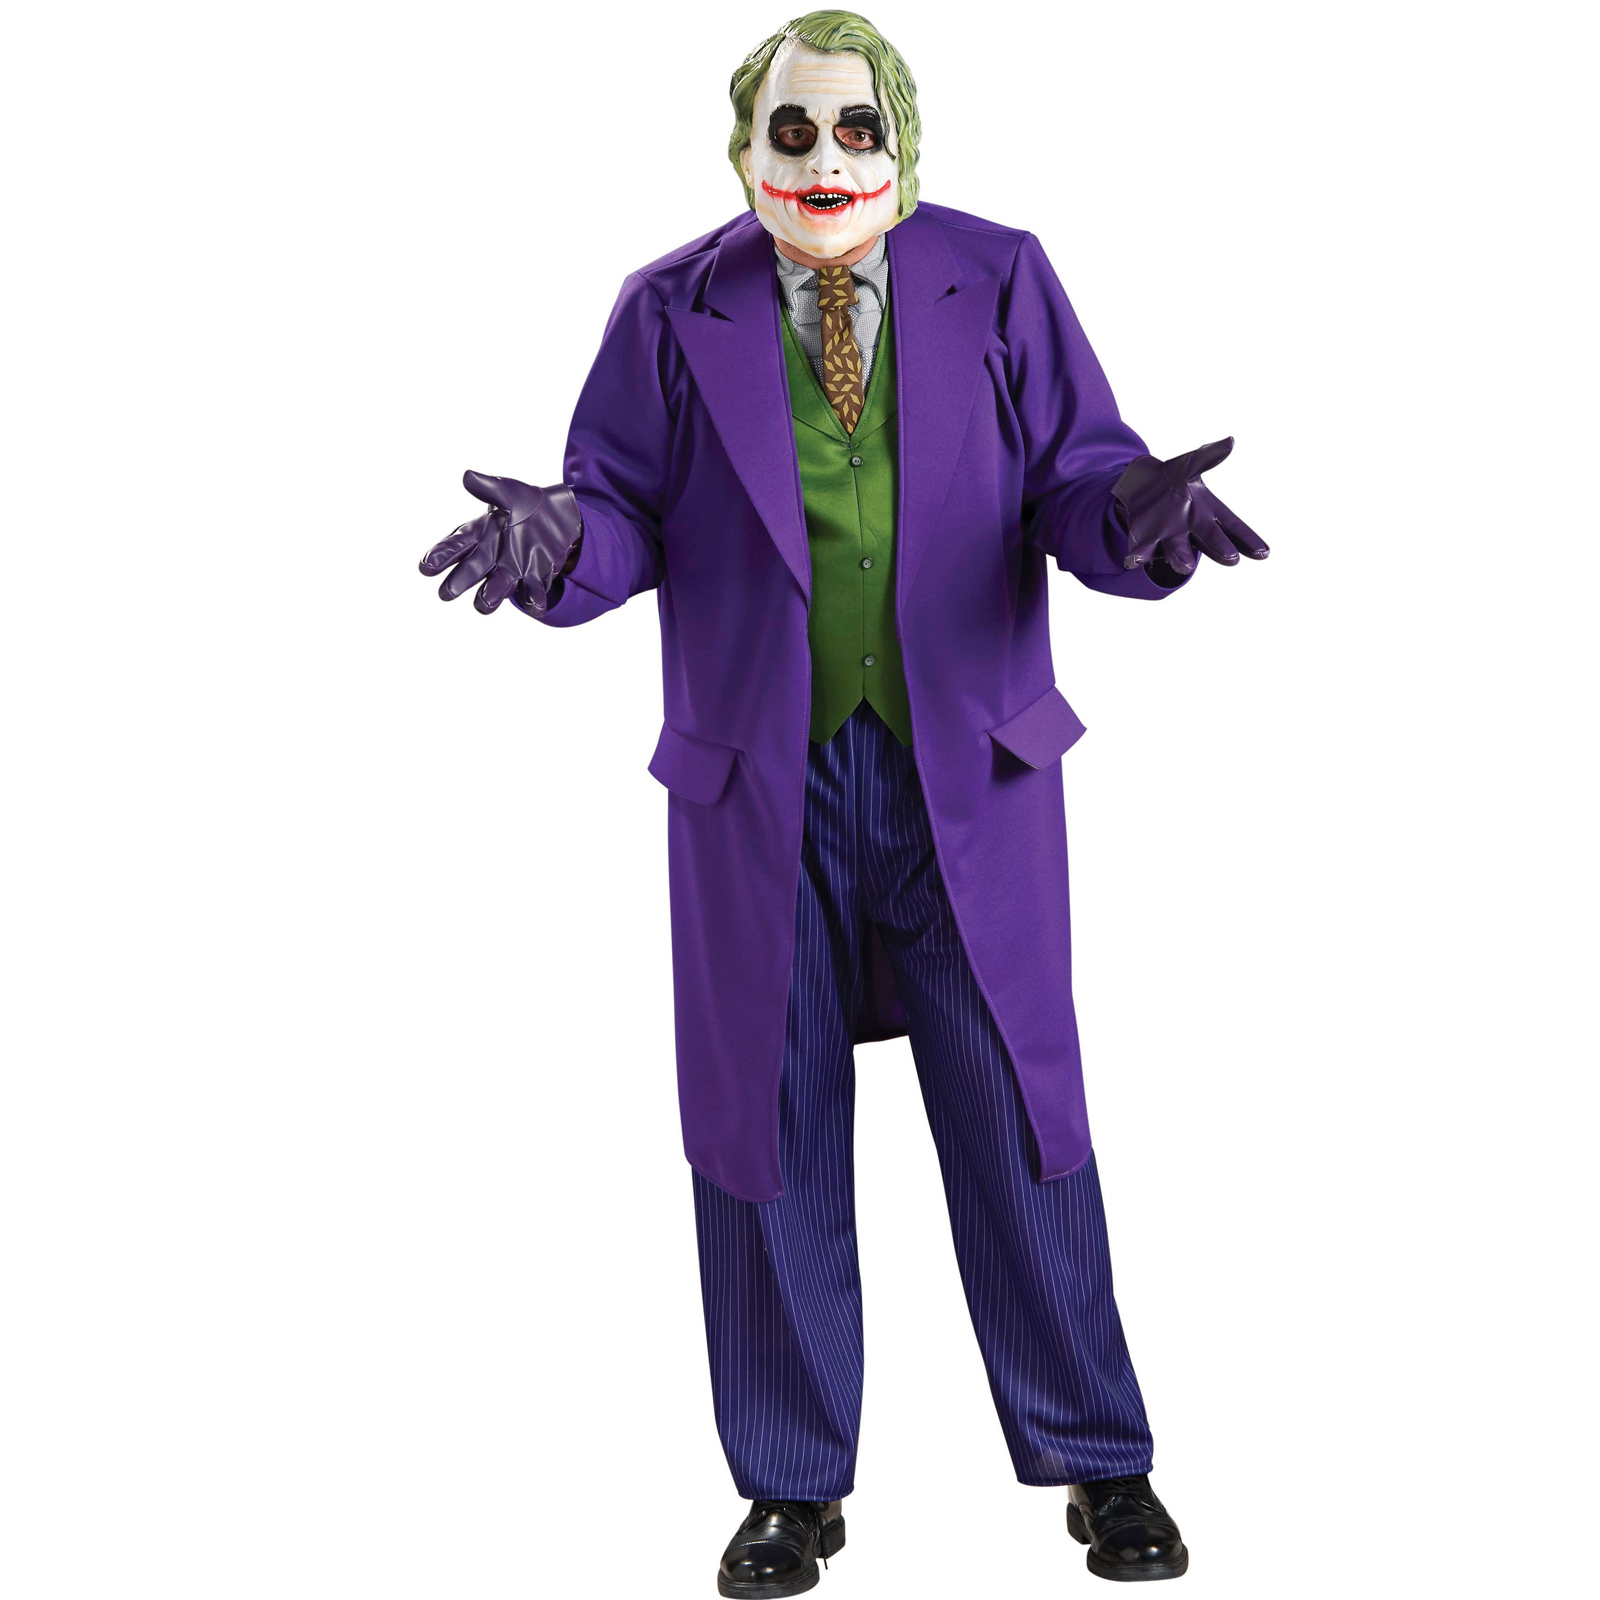 The+joker+heath+ledger+costume